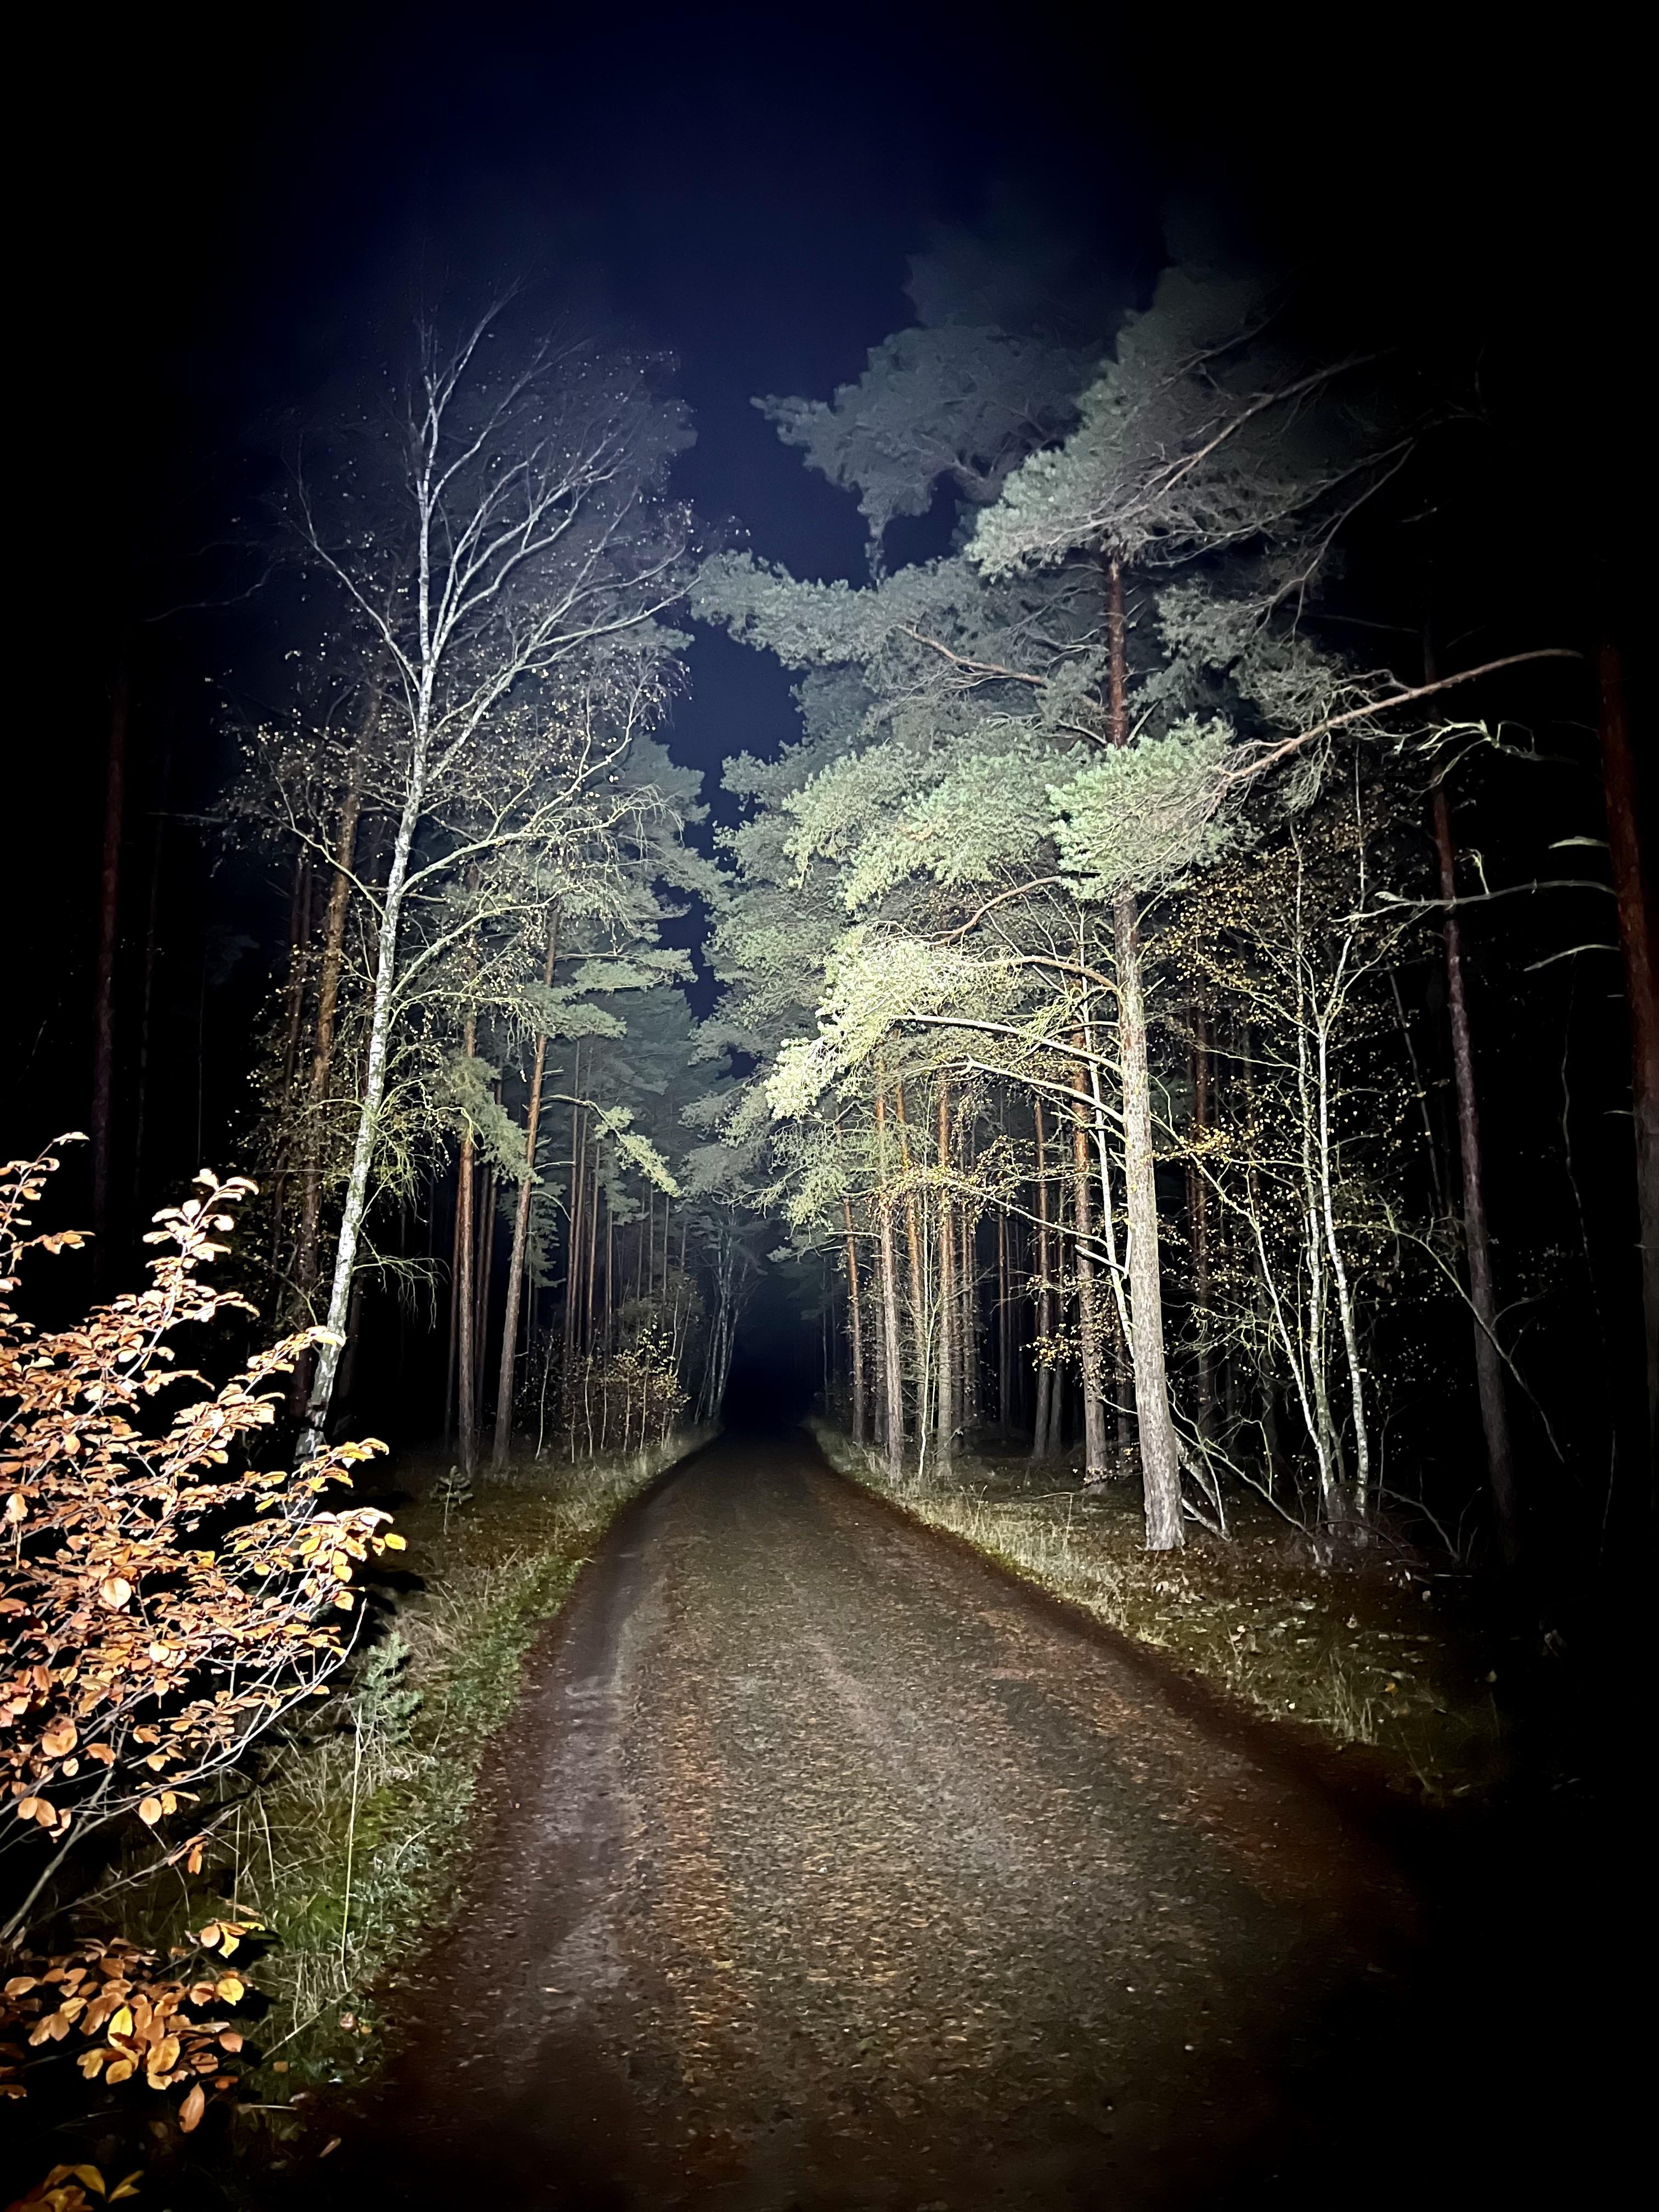 Ein durch eine Helmleuchte ausgeleuchteter Weg im Dunklen. Der Weg verläuft durch den Wald, die Bäume sind auch teilweise angeleuchtet.